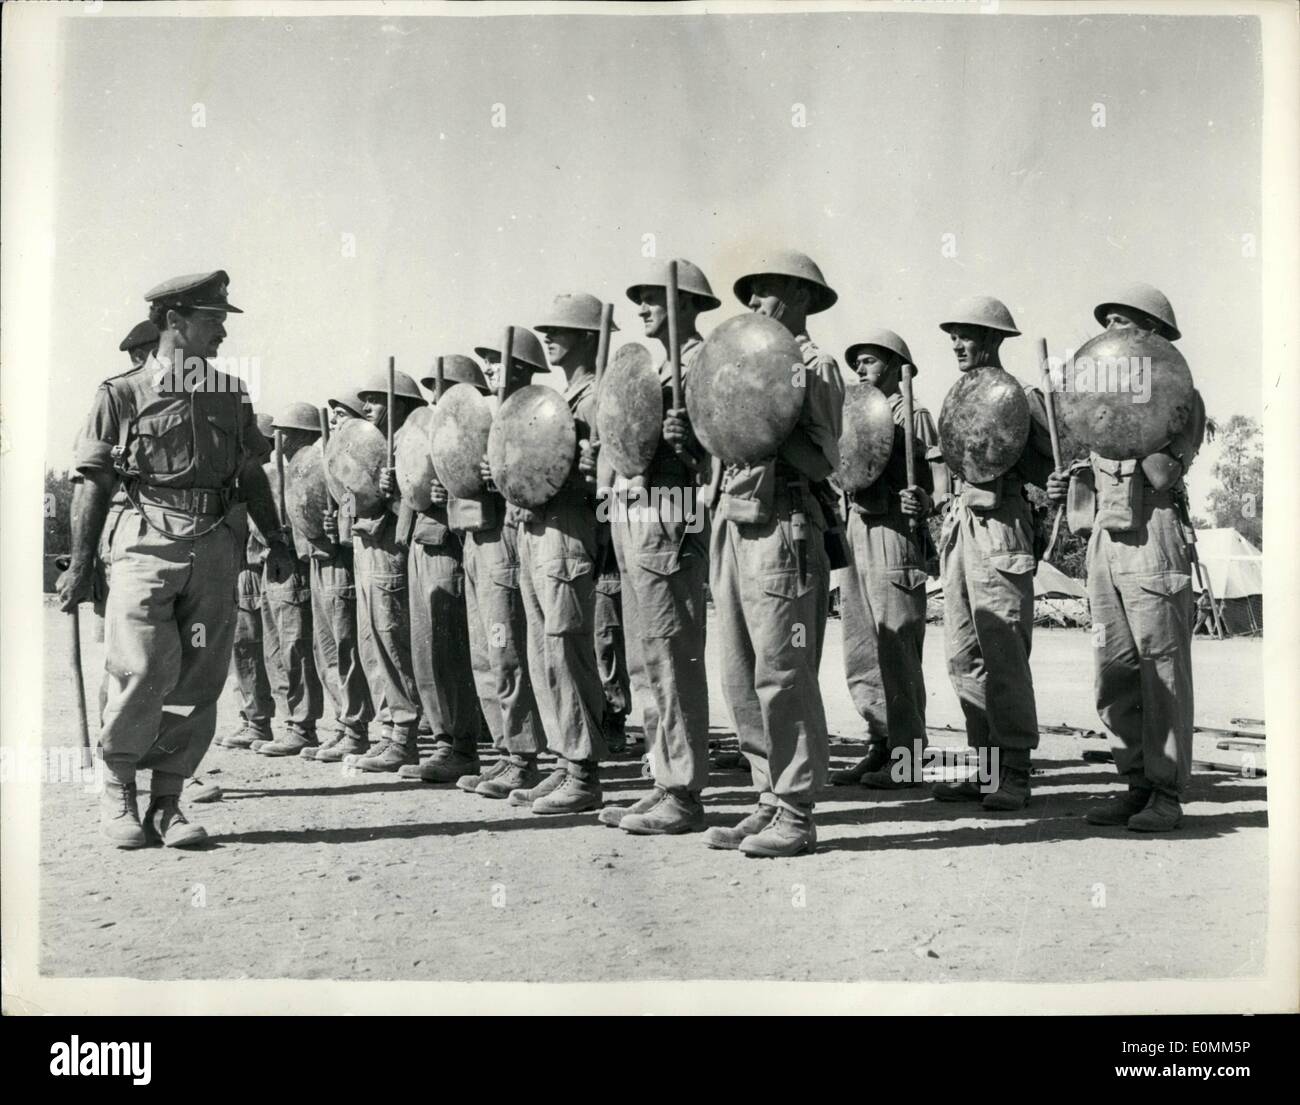 10 octobre 1955 - les troupes britanniques à Chypre ISSd avec des matraques et des boucliers - remplaçant leurs fusils comme armes anti-émeute. : Suite à la déclaration du gouverneur du maréchal de Chypre Sir John Hardin - les troupes britanniques - le 1er régiment de bataillon South Stafford a été délivré avec des boucliers métalliques (couvercles de poubelle) et des matraques avec lesquels réprimer les émeutes. C'est la première fois dans l'histoire de l'armée britannique que Tommy Atkins doit déposer son eifle et sa baïonnette pour un bâton et un couvercle de poubelle. Photos montrant des hommes du South Stafford regt Banque D'Images